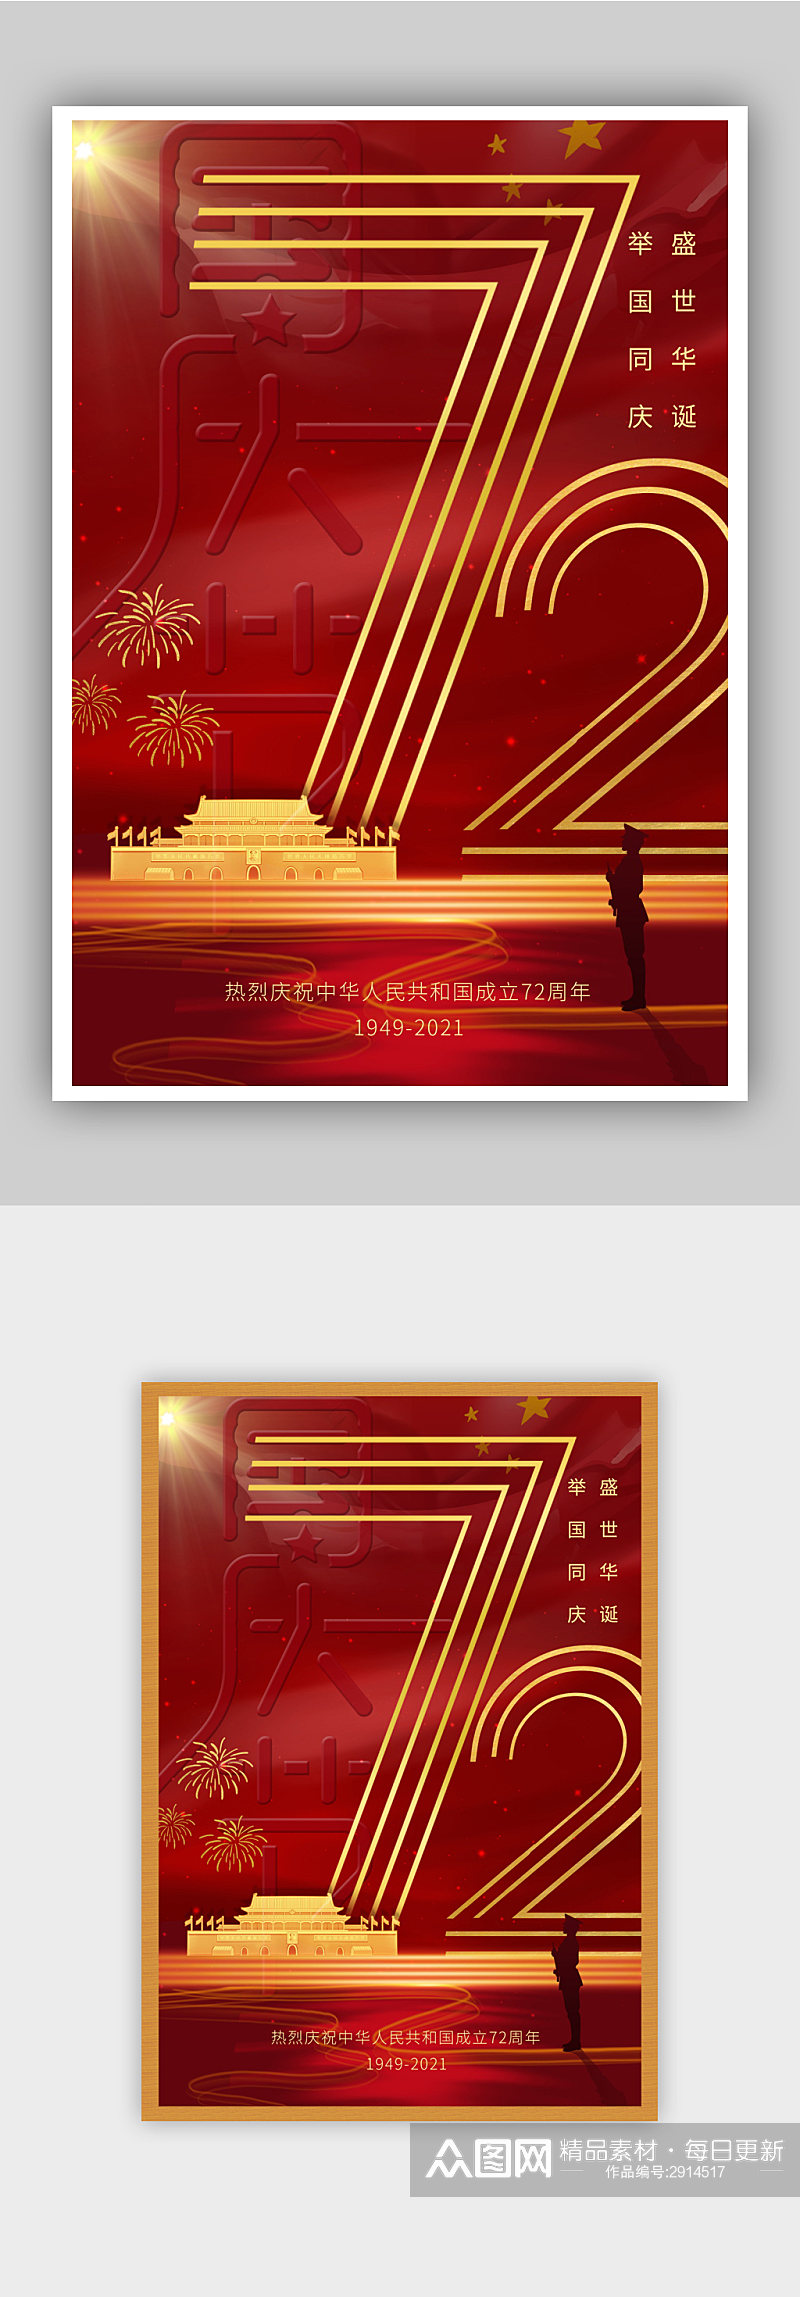 红色庆祝国庆节建国72周年海报素材